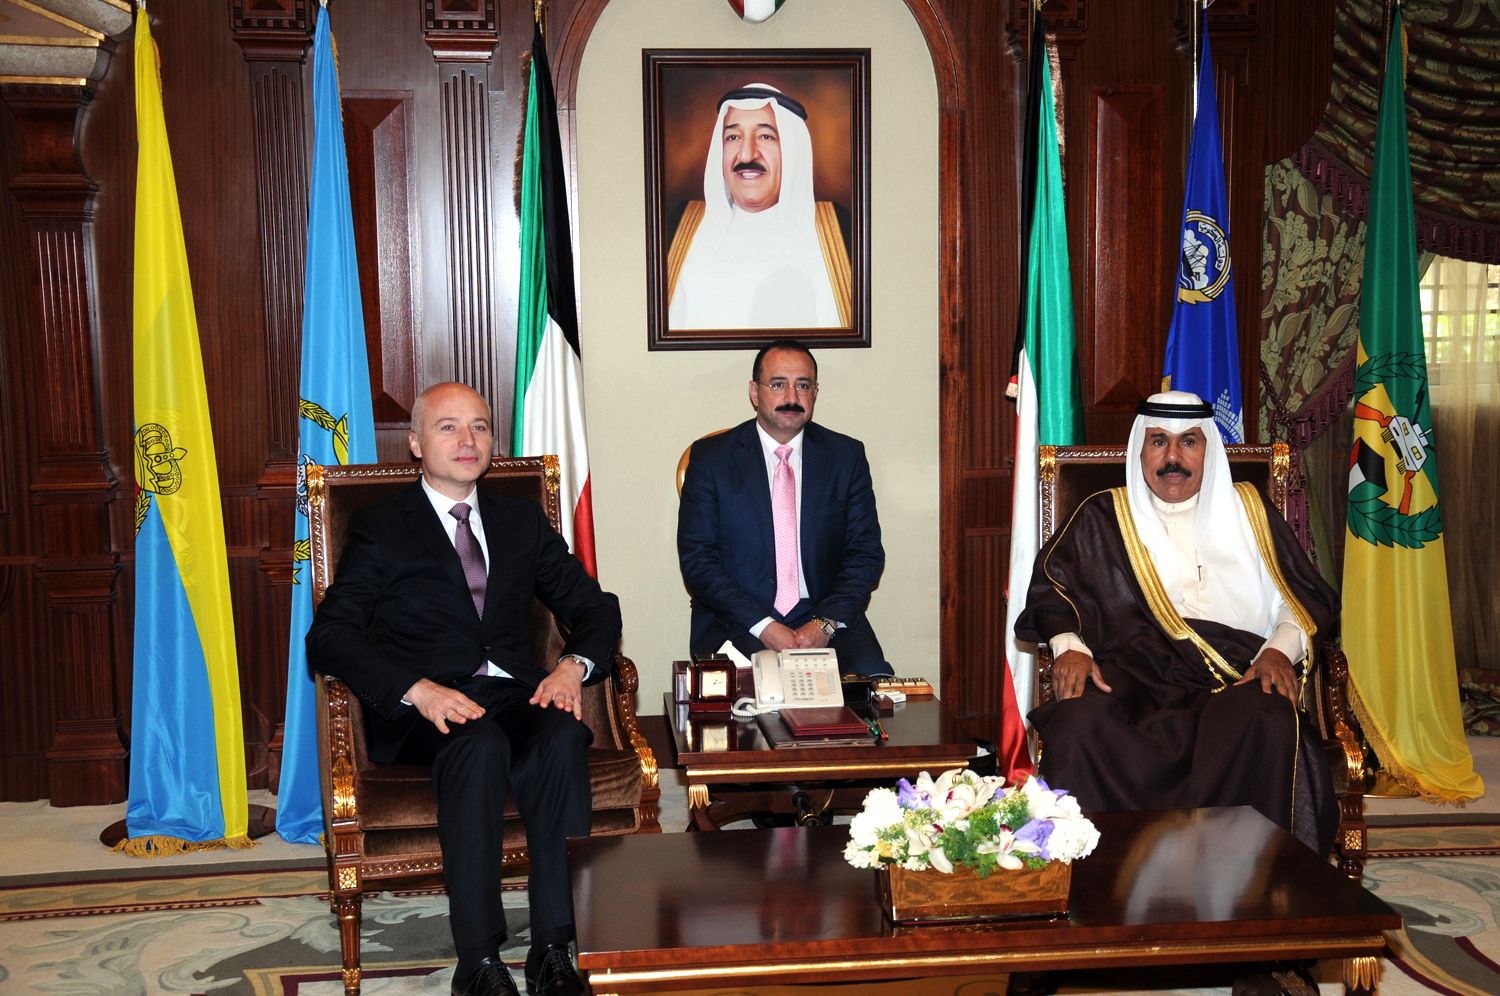 His Highness the Crown Prince Sheikh Nawaf Al-Ahmad Al-Jaber Al-Sabah met outgoing Serbian Ambassador Mihailo Brkic